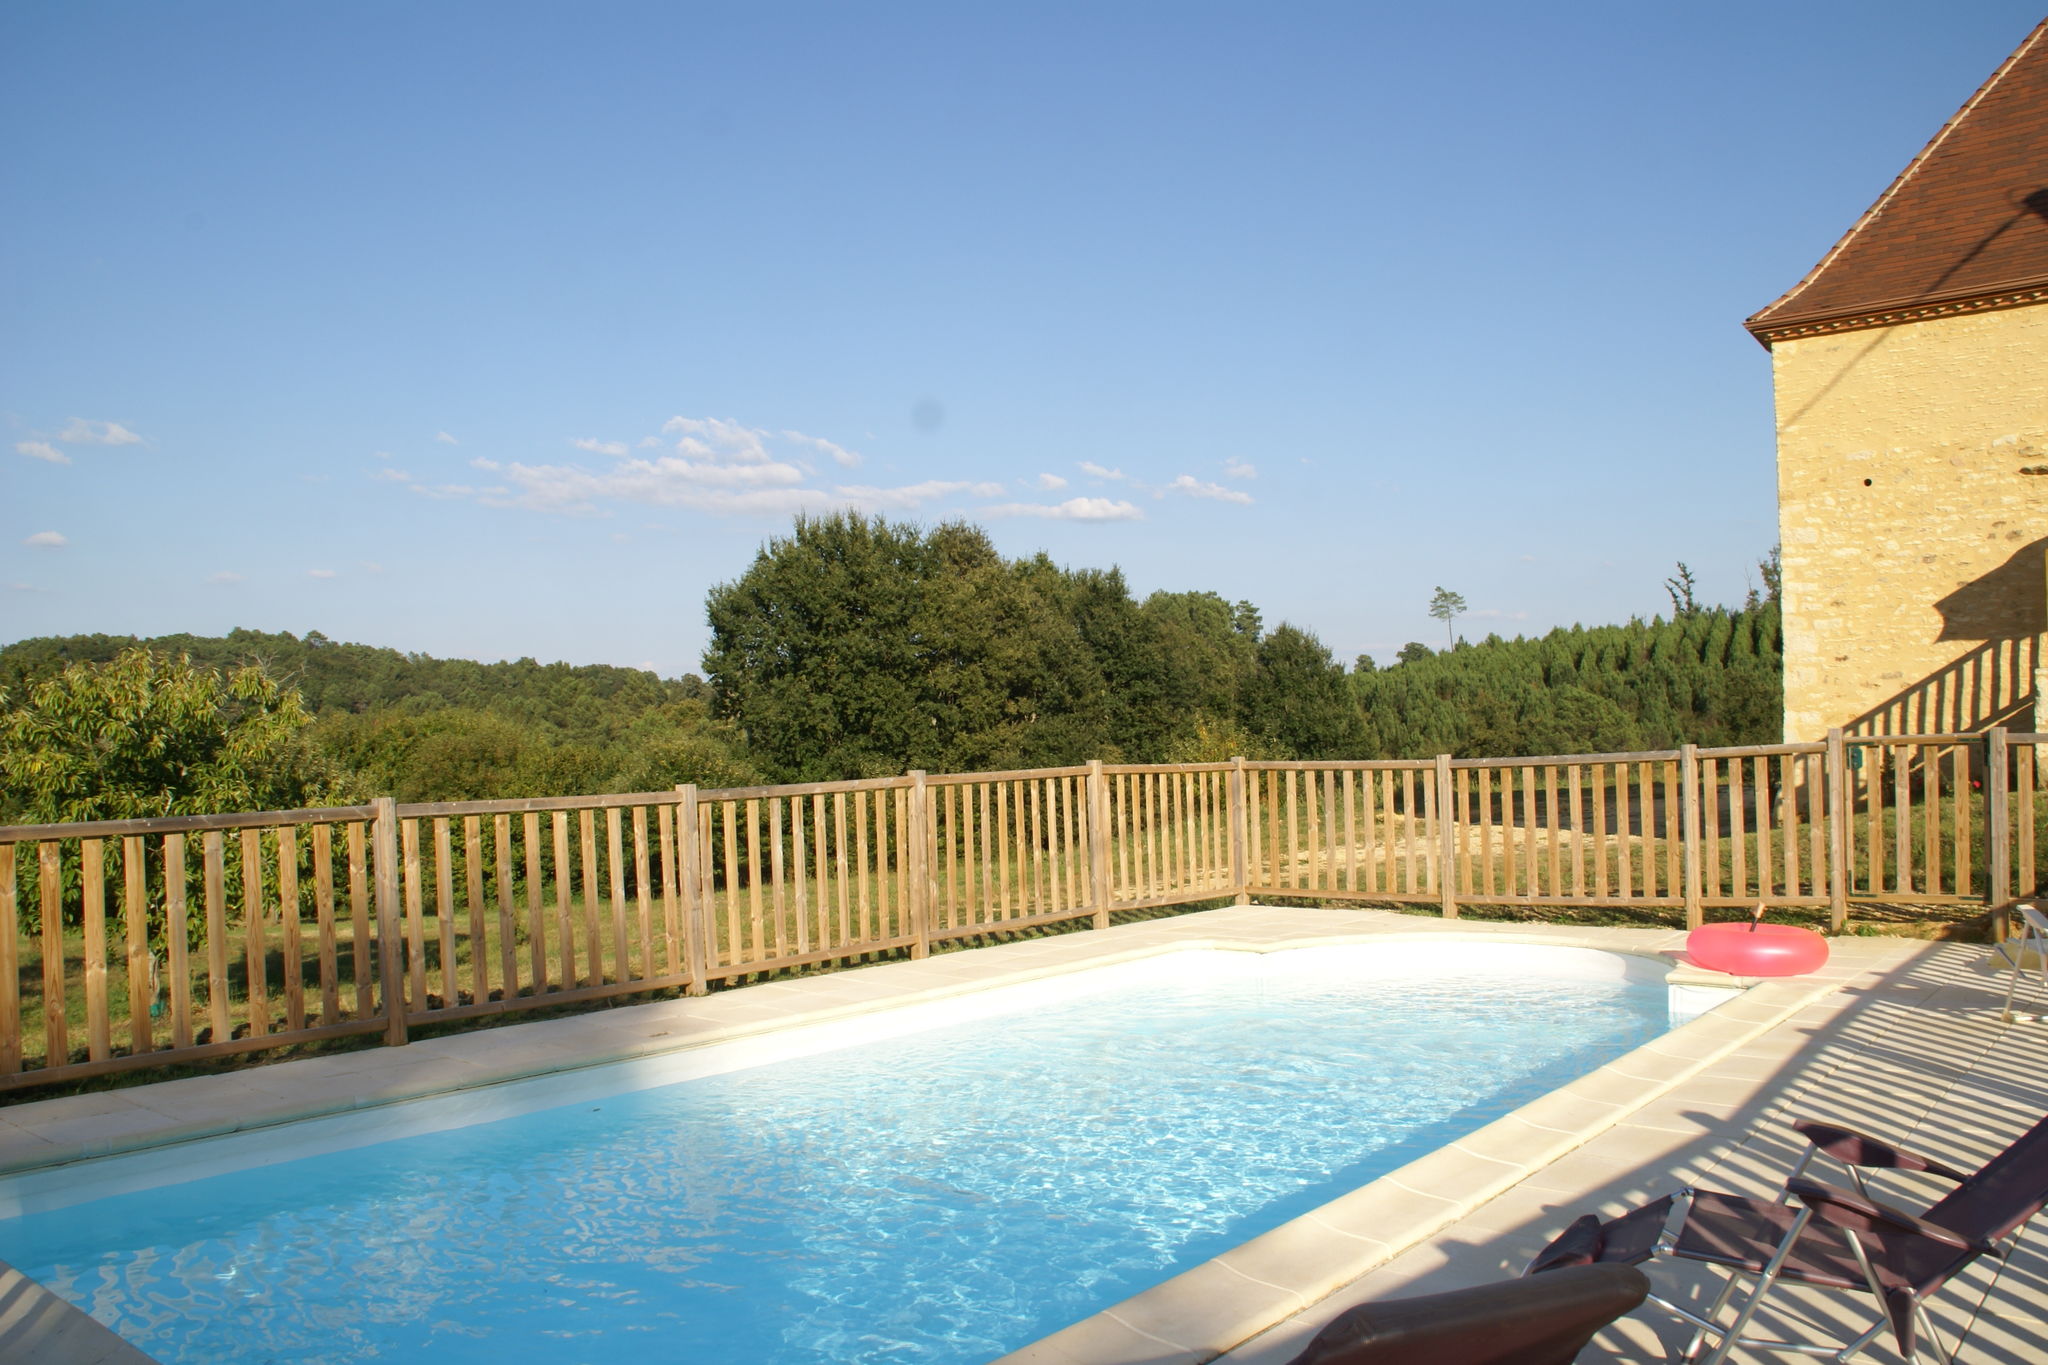 Authentiek vakantiehuis met privézwembad in schitterende en verstilde omgeving.